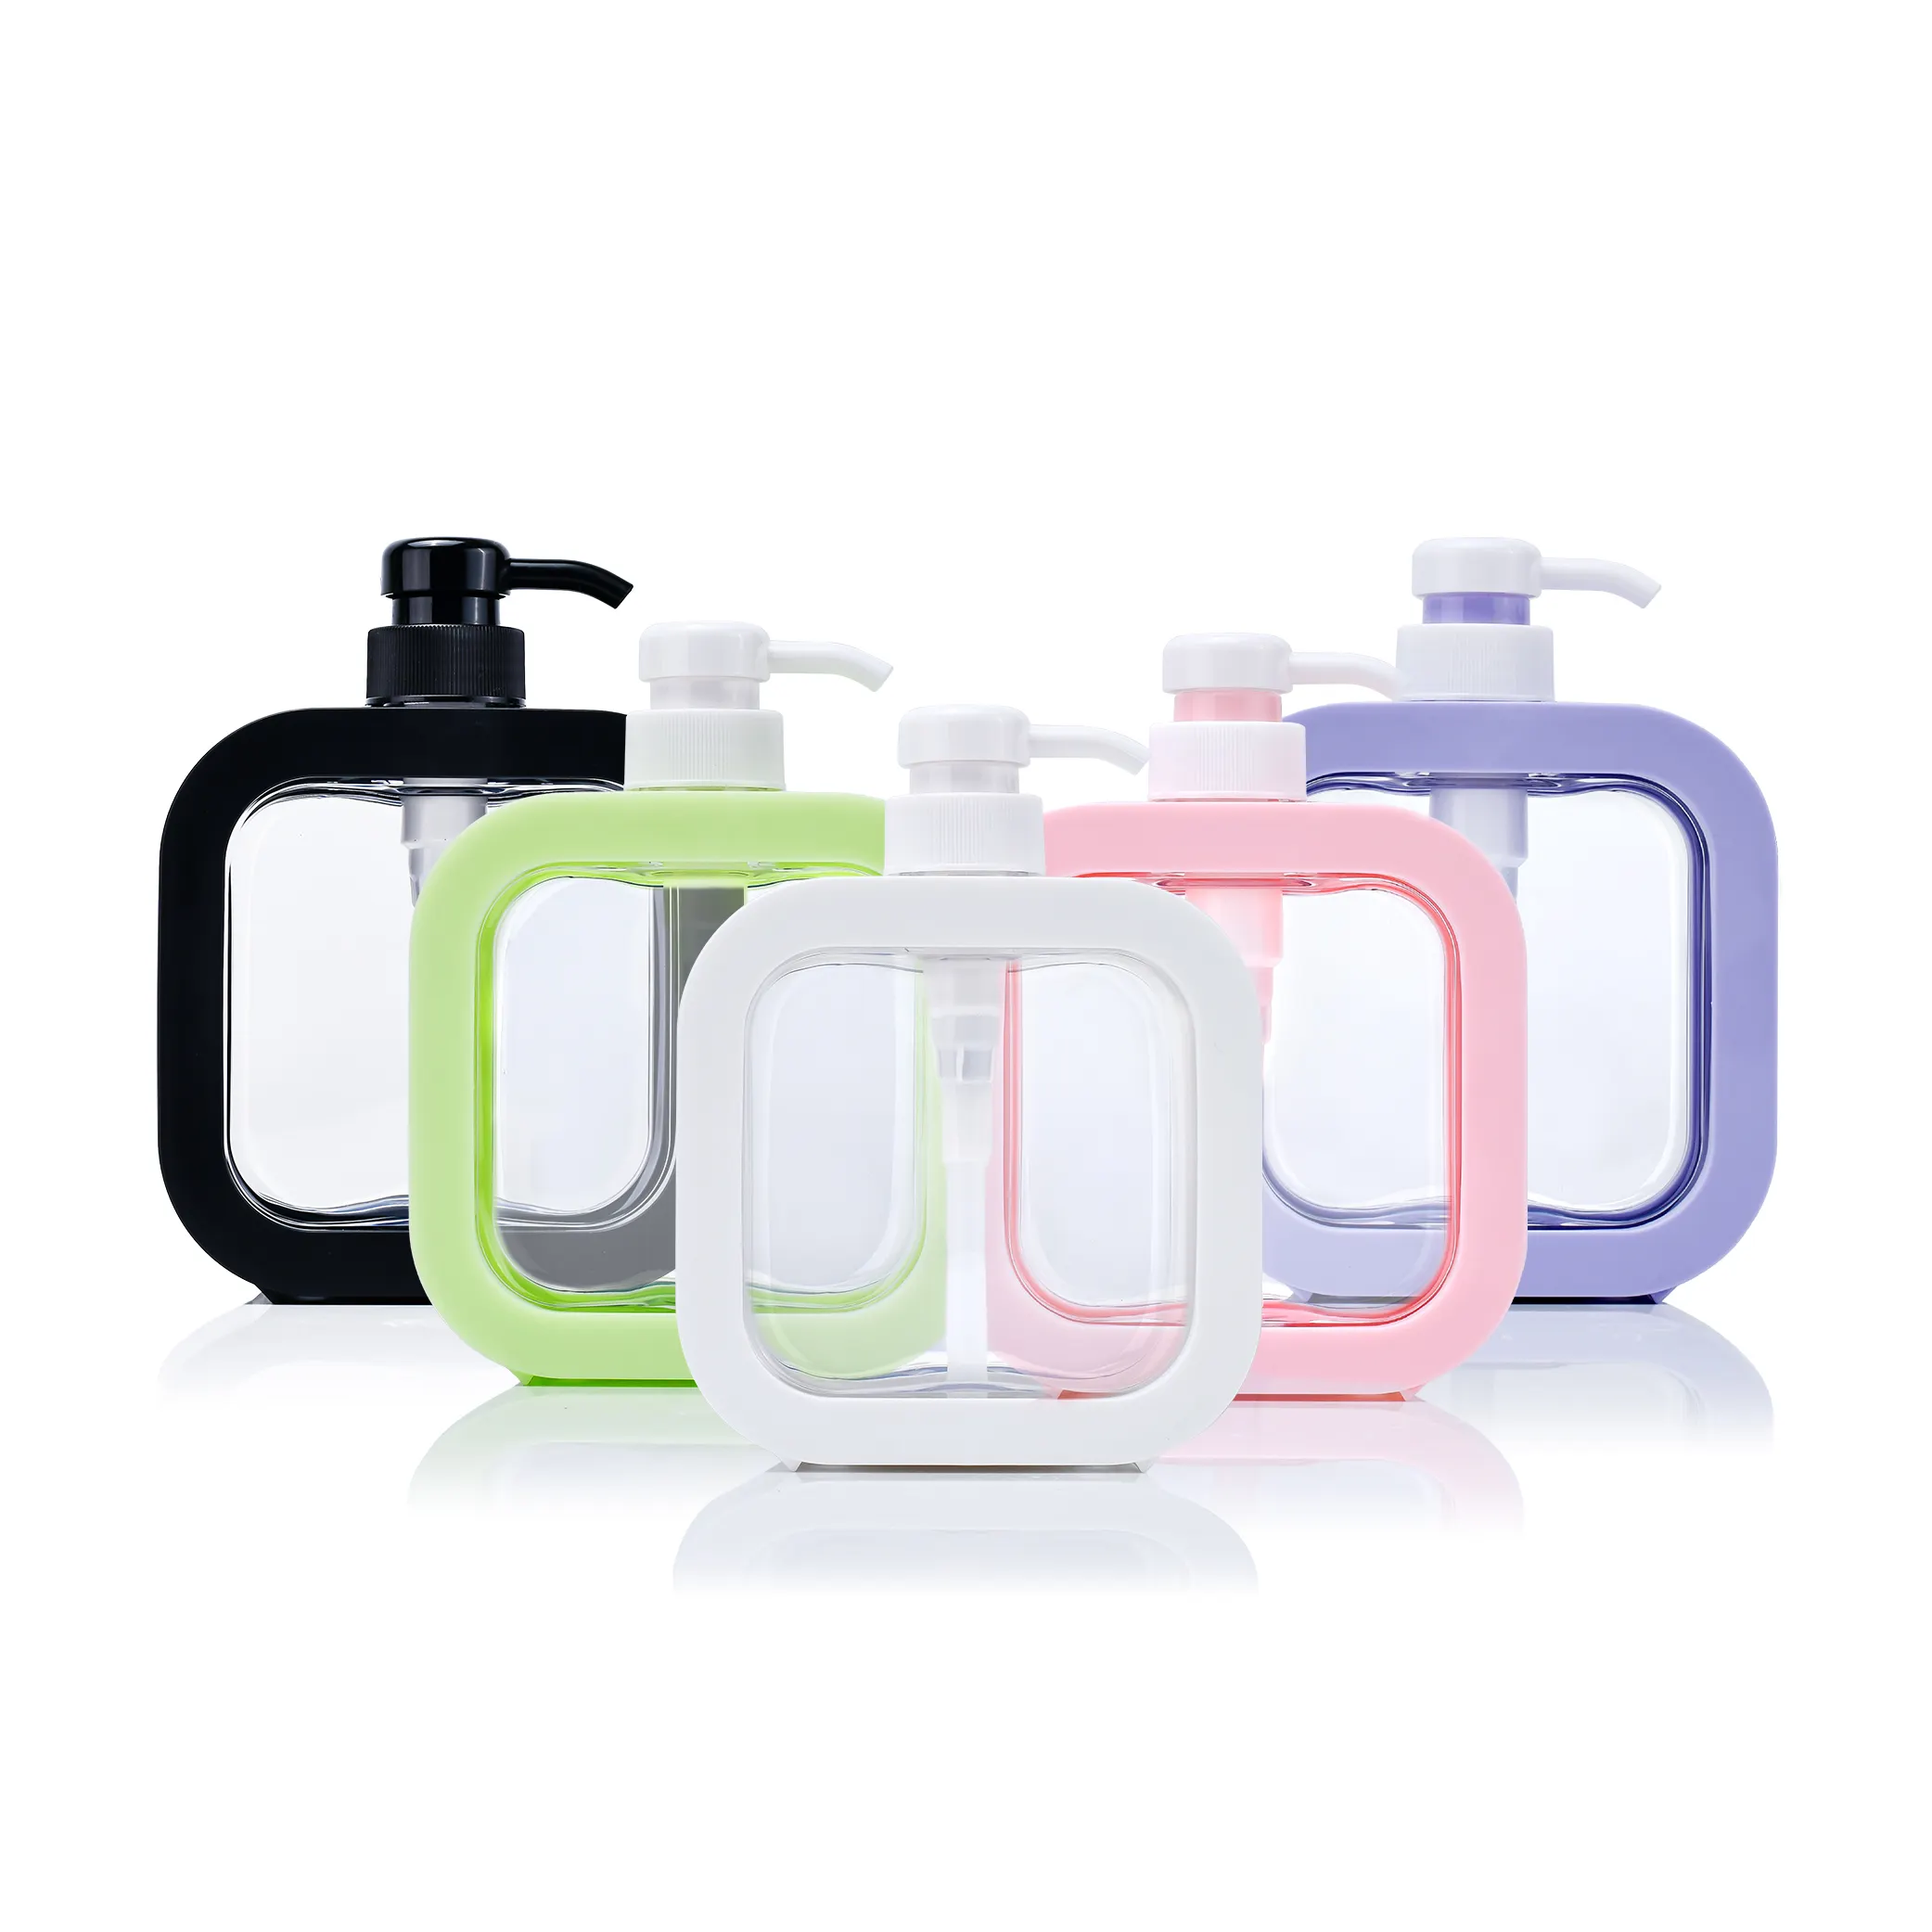 Nova loção corporal de plástico recarregável quadrada plana colorida para lavar as mãos, garrafa com dispensador, 10 onças, 300 ml e 500 ml